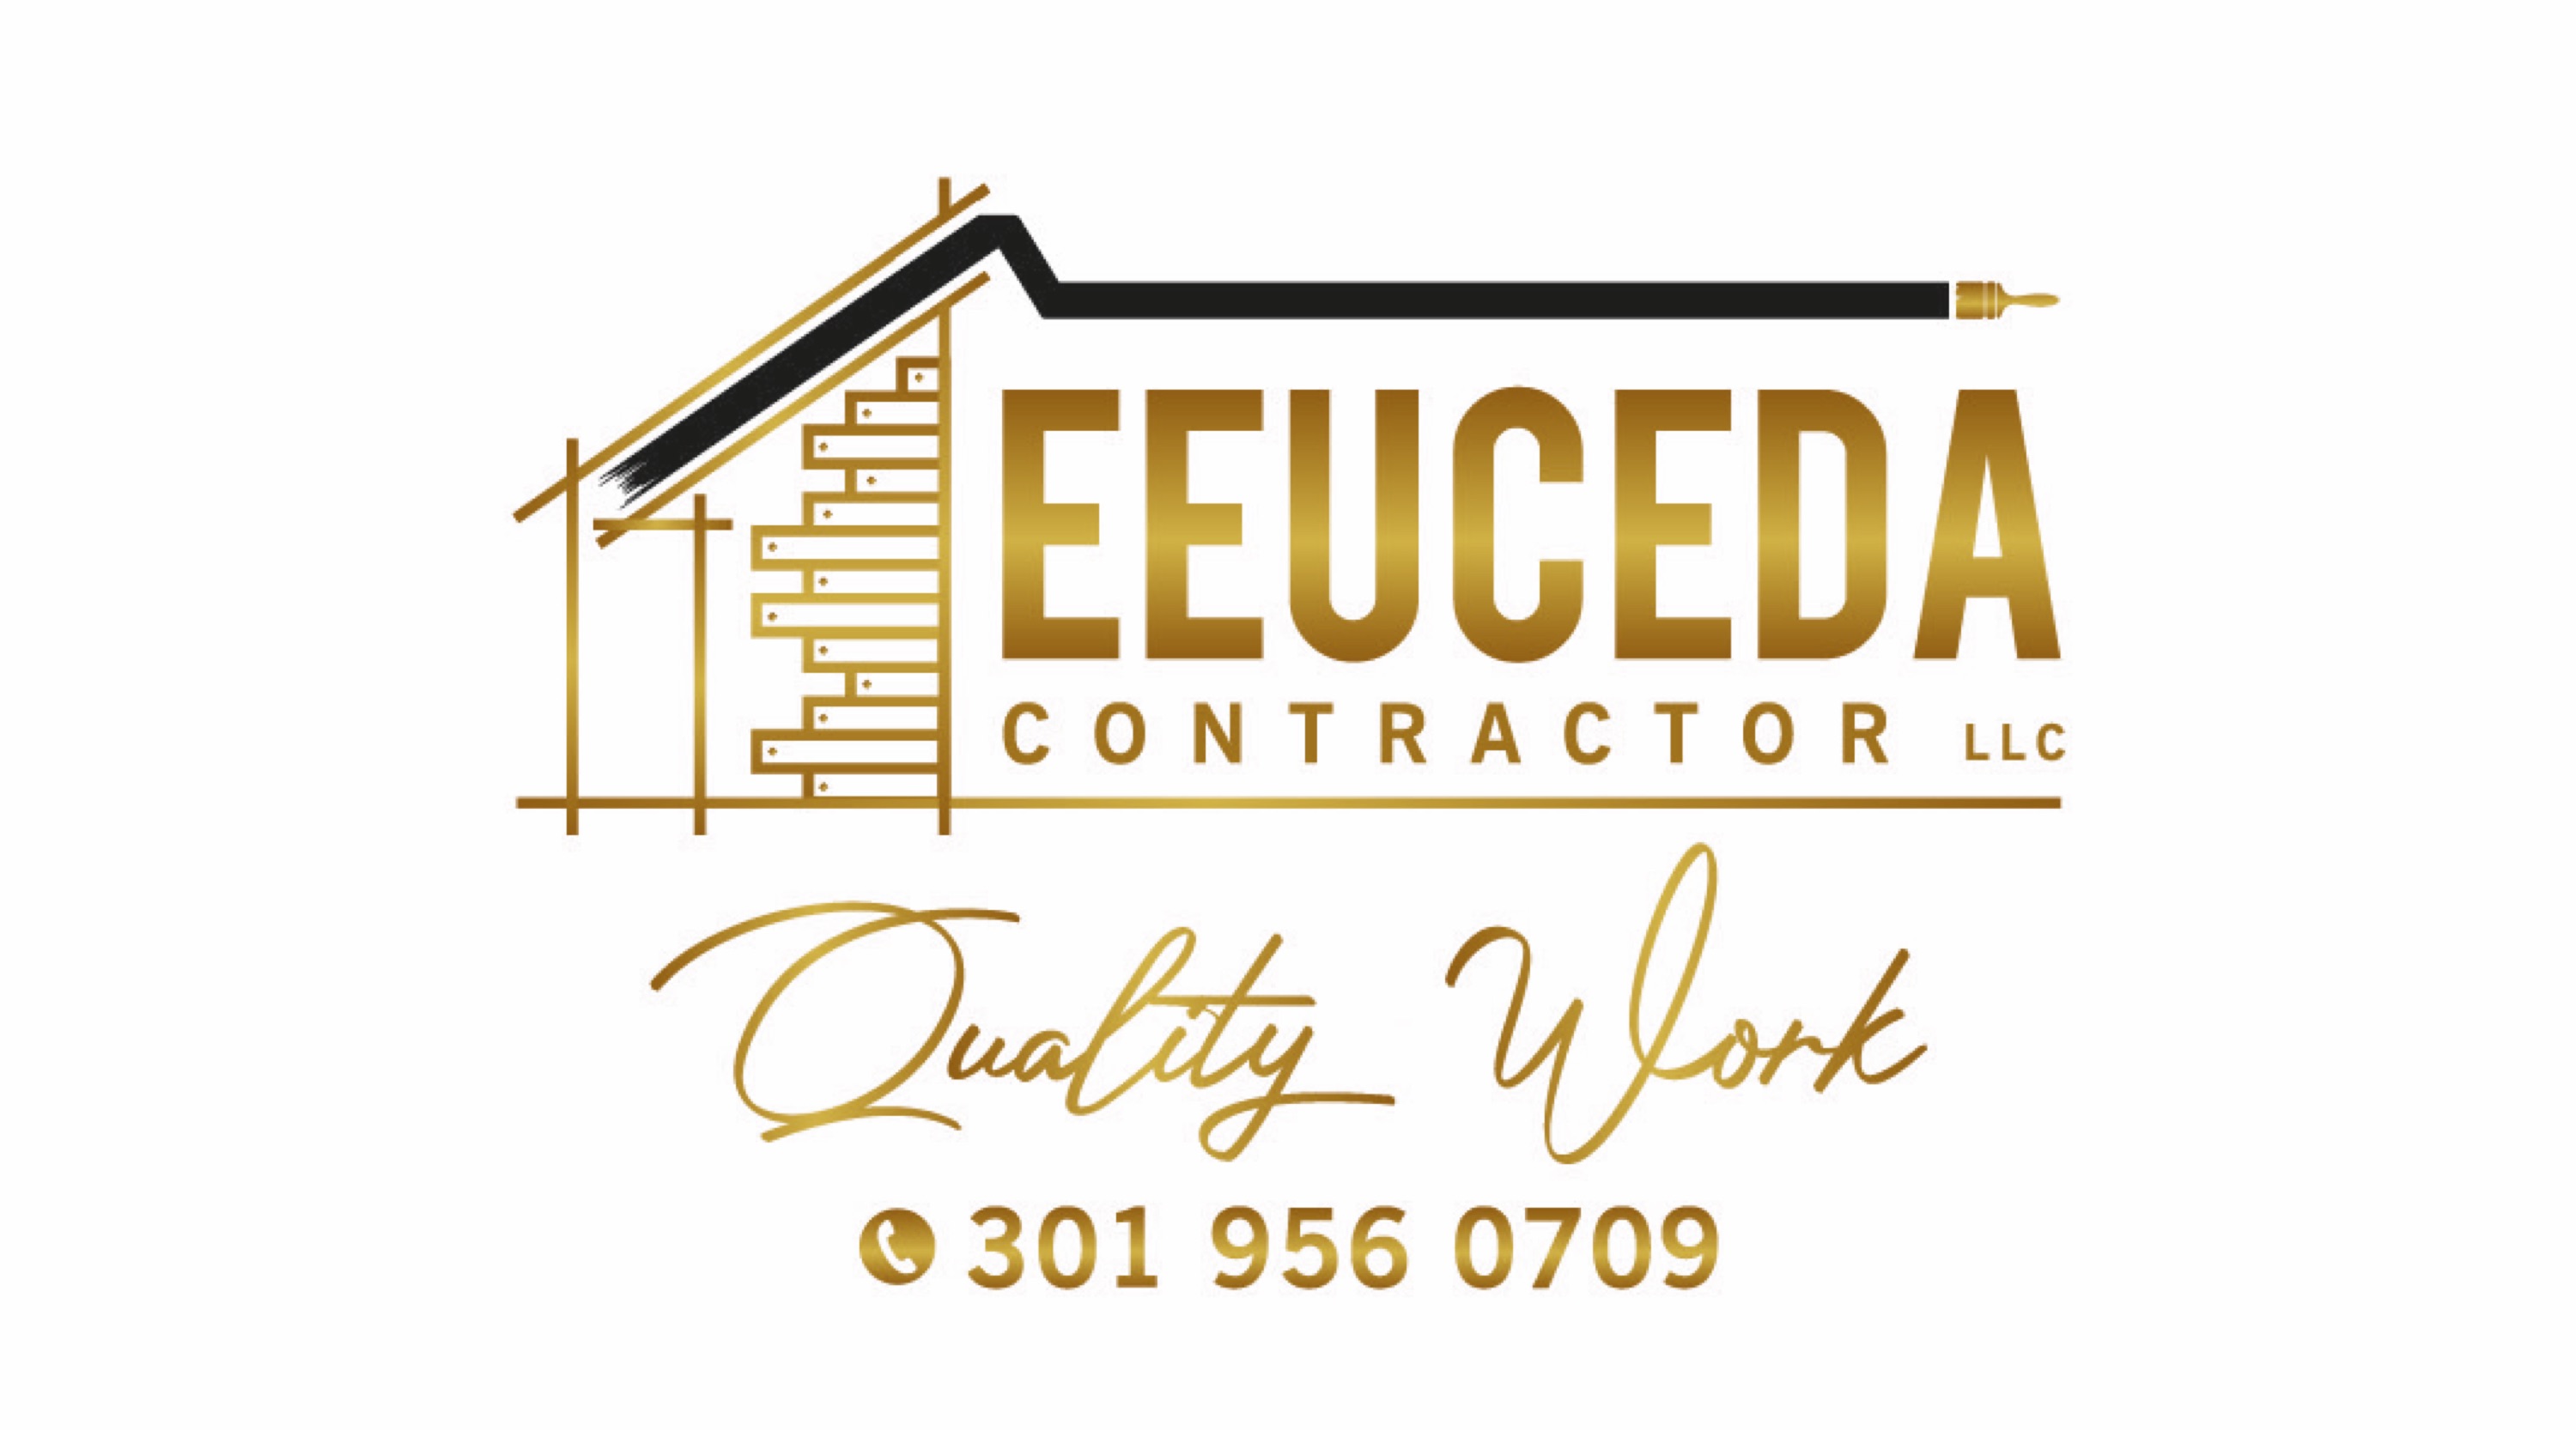 Eeuceda Contractor, LLC Logo